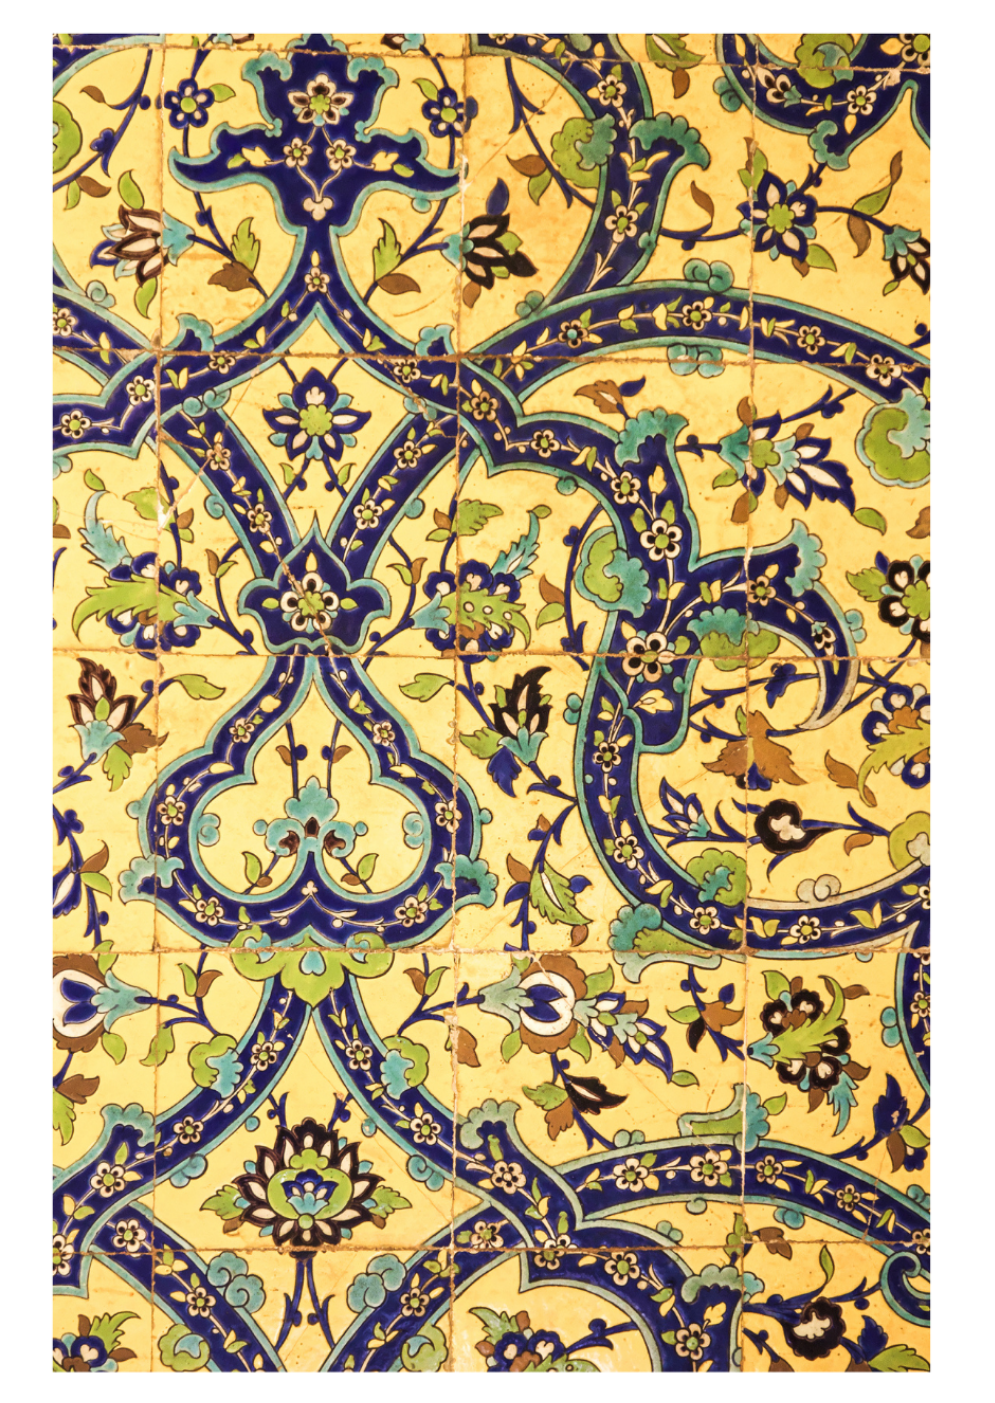 کارت پستال کاشیکاری ایرانی | Persian Tiles Card